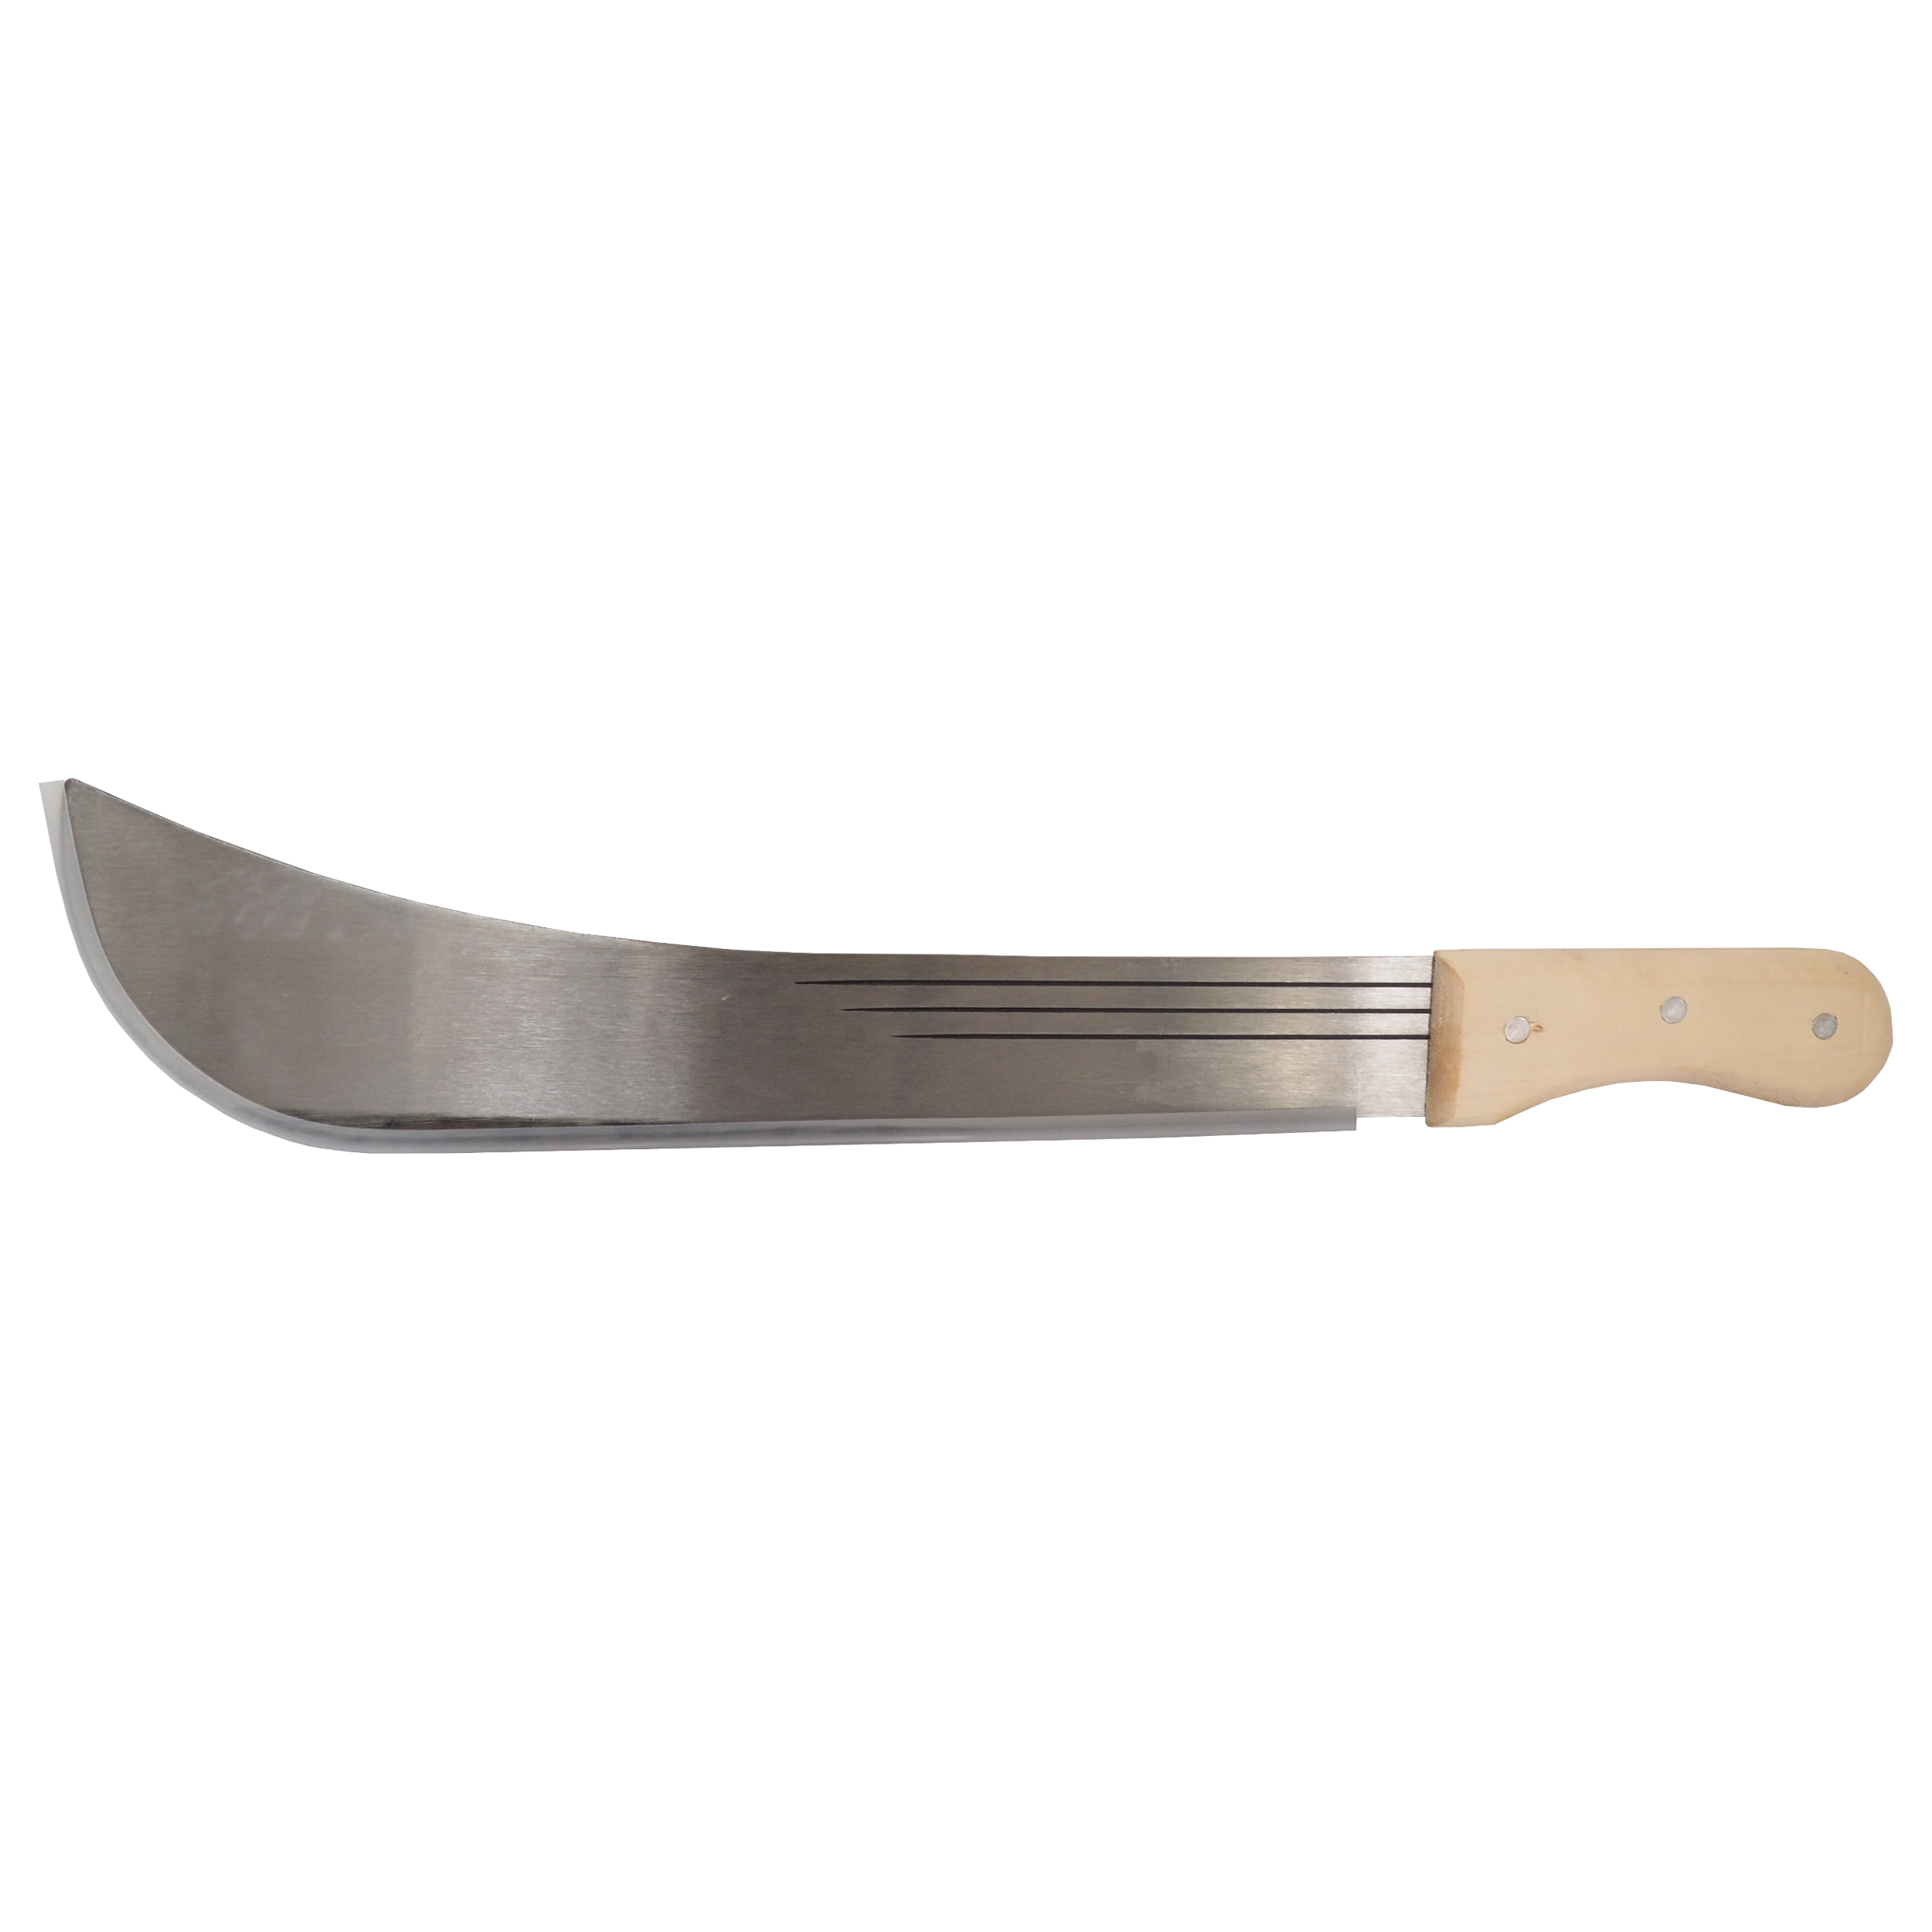 TOPTRADE mačeta ocelová, s dřevěnou rukojetí, 16“ čepel, 500 mm 0.54 Kg TOP Sklad4 309170 1103